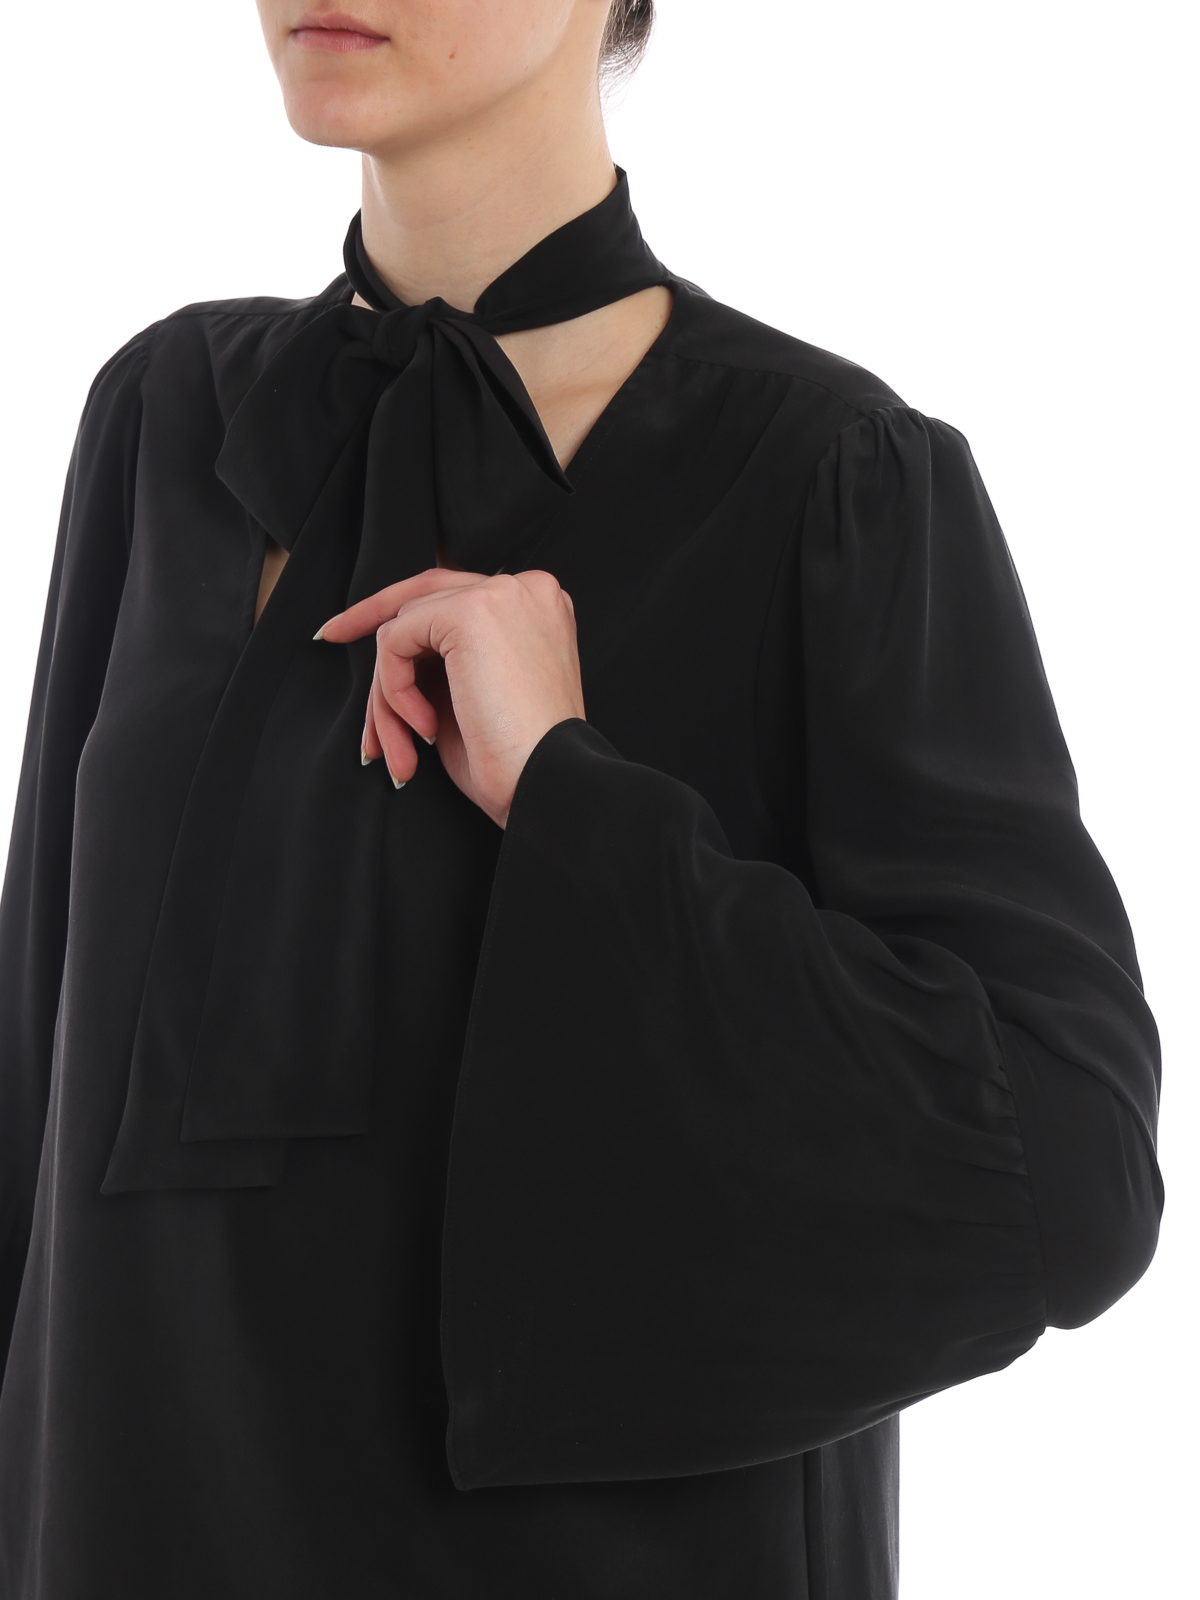 michael kors black blouse